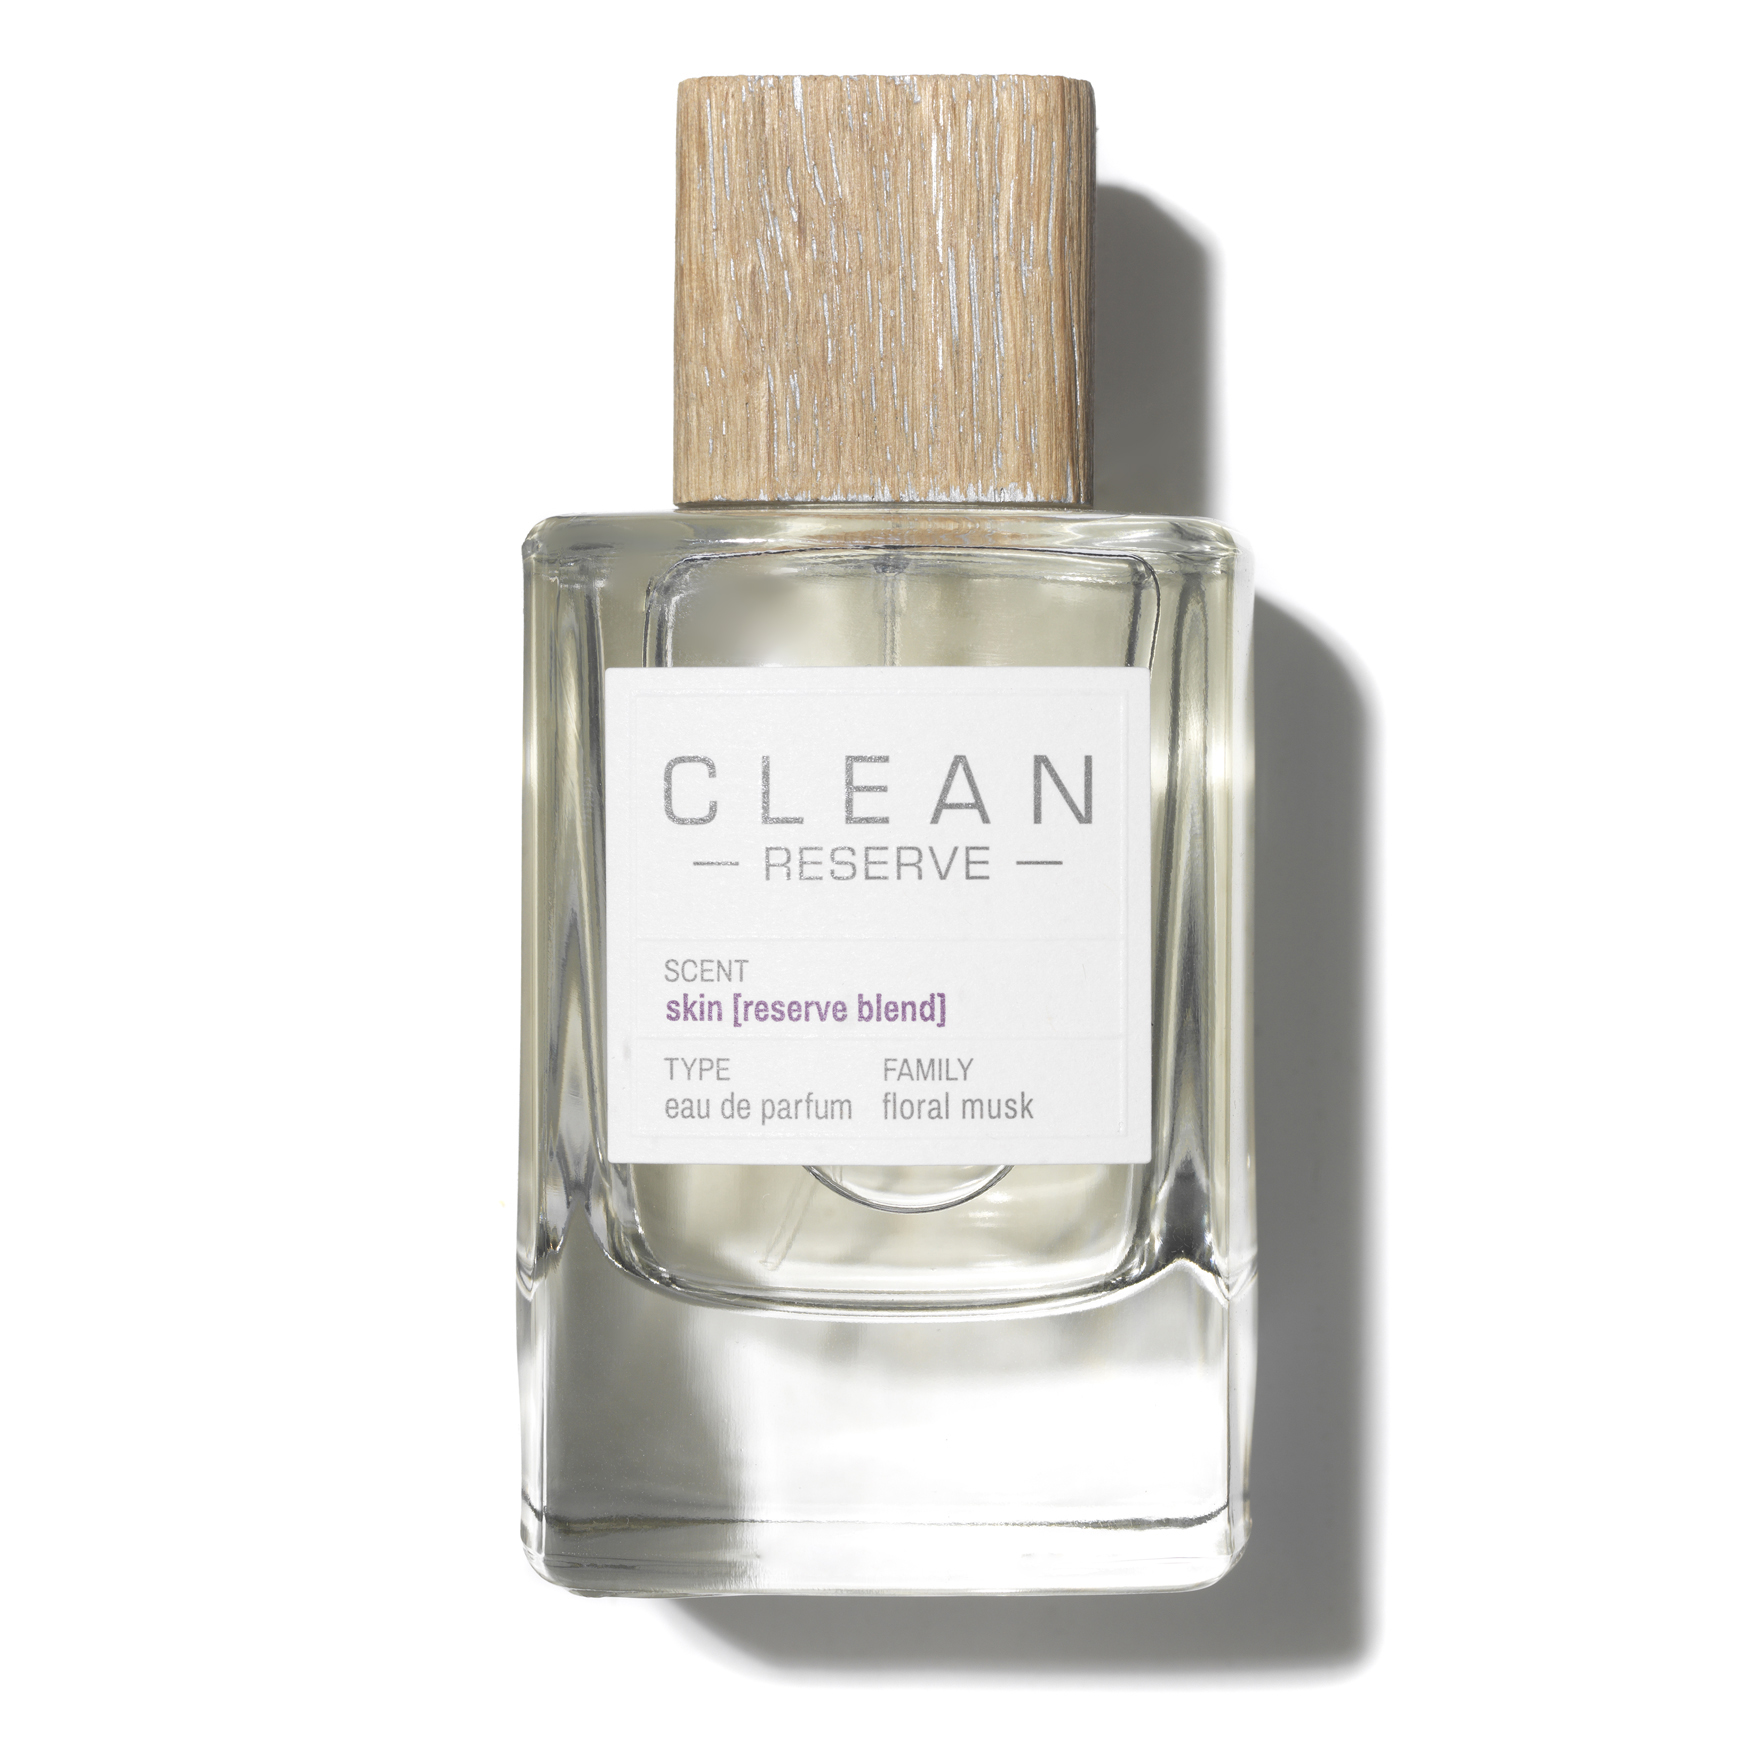 Clean Reserve Skin [Reserve Blend] Eau de Parfum | Space NK